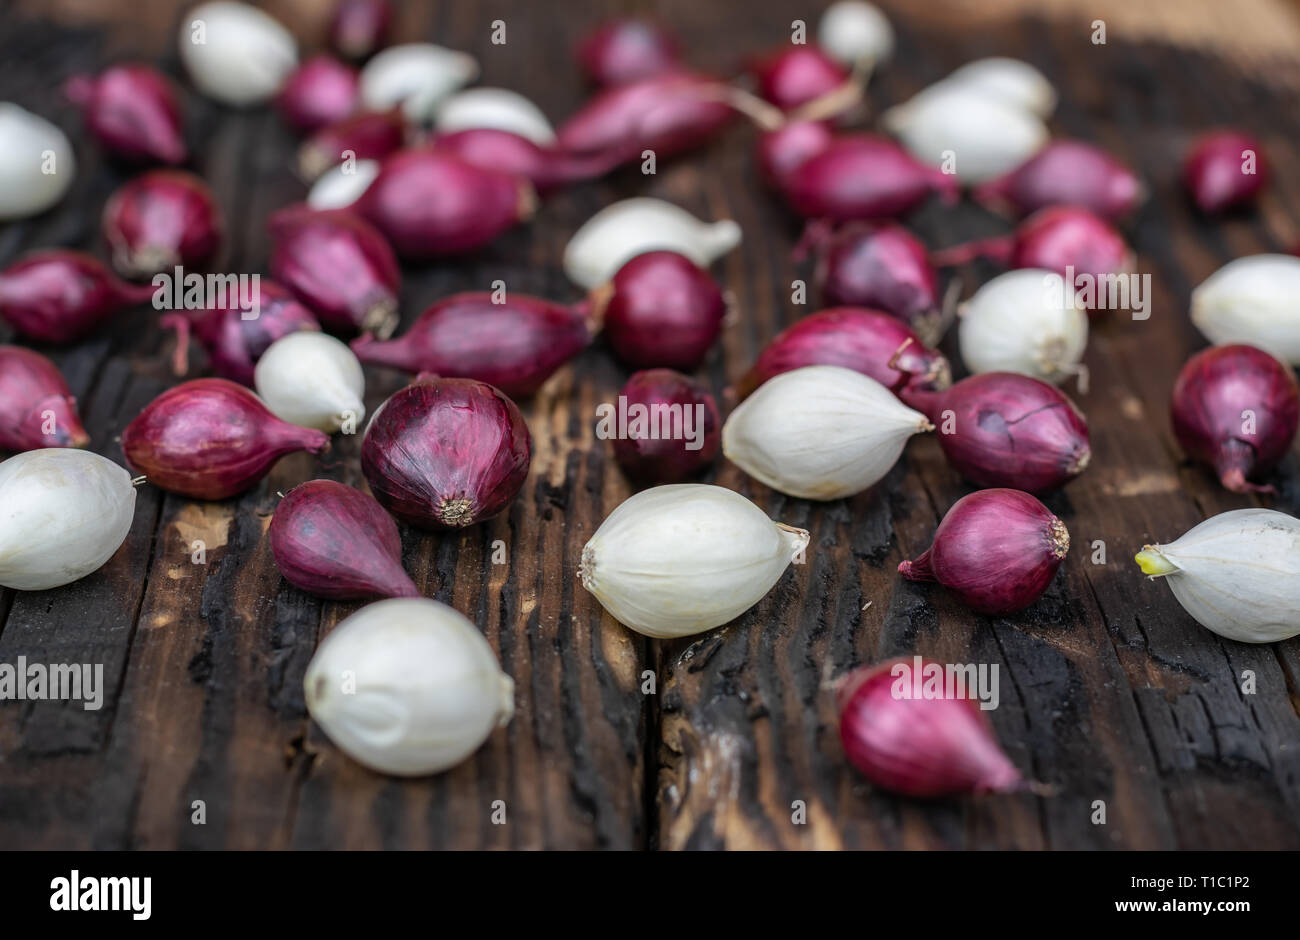 Landwirtschaft, Anbau, Landwirtschaft und Gemüse Konzept: Kleine rote und weiße Zwiebel für die Anpflanzung auf einem Hintergrund von verbranntem Holz. Stockfoto